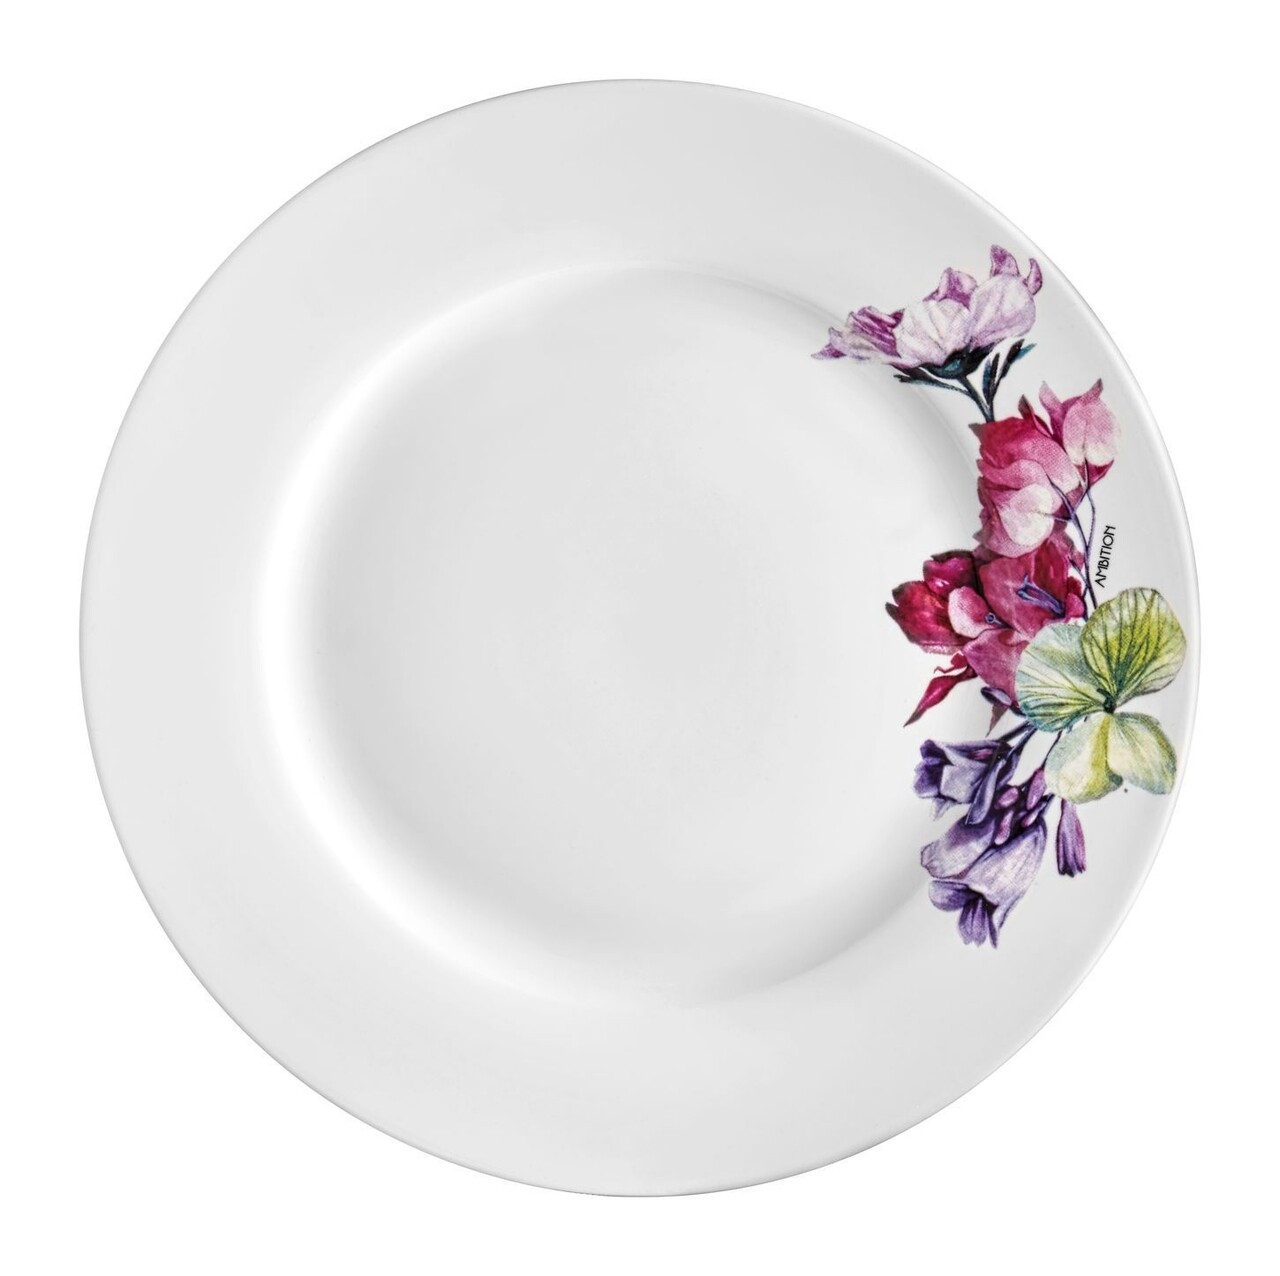 Garden Desszertes tányér, Ambition, porcelán, 19 cm, színes